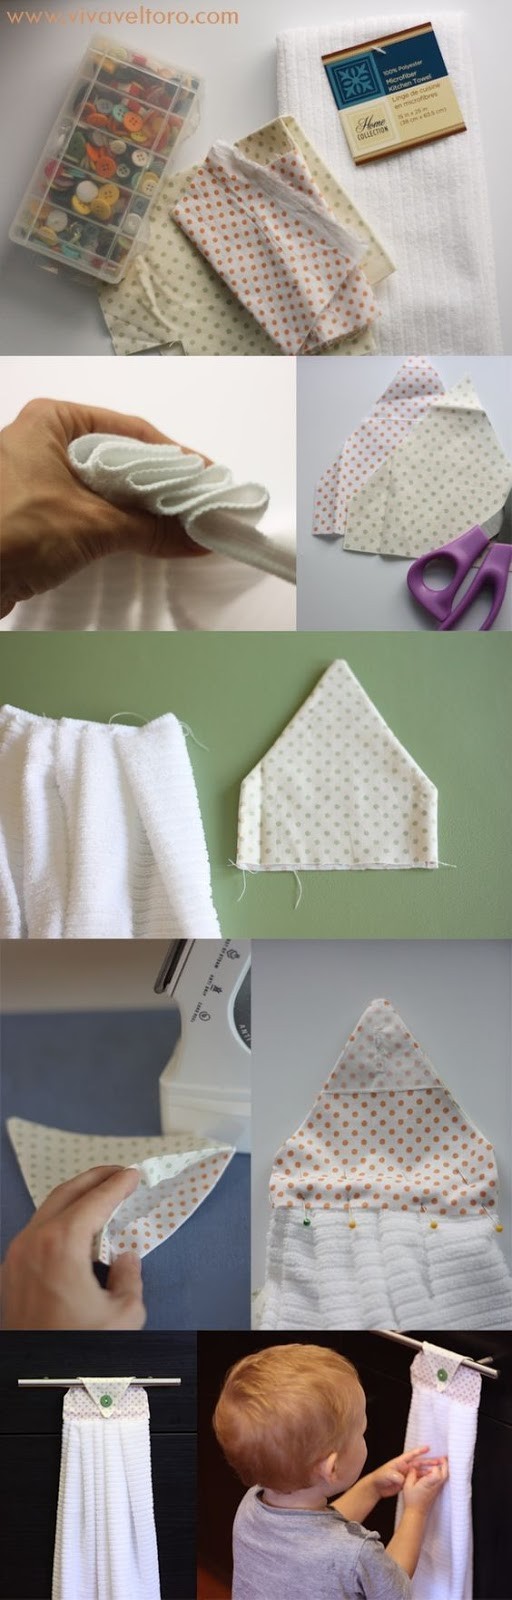 1. Un'idea semplice per creare asciugamani da appendere all'altezza giusta per i bambini